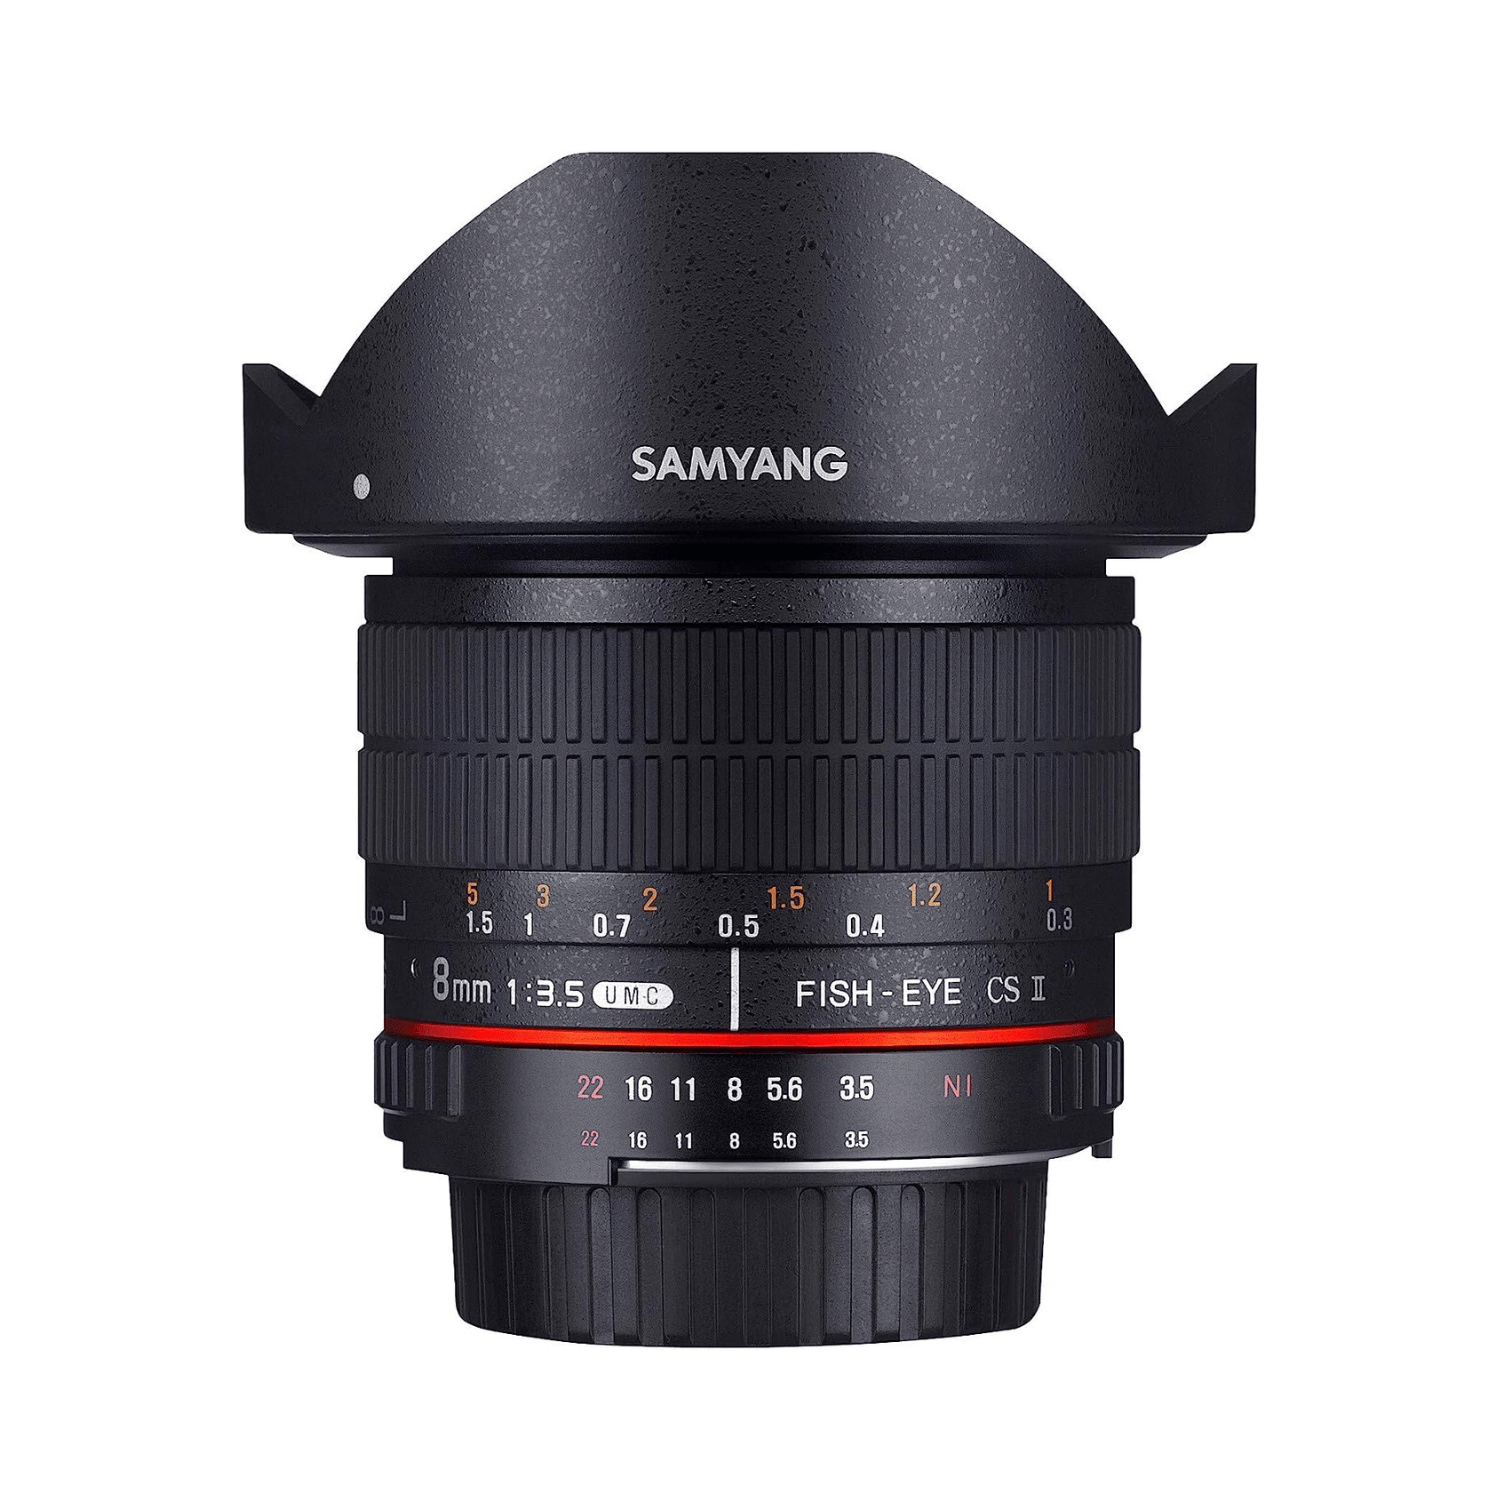 Samyang 8mm F3.5 Aspherical IF MC Fish-eye CSII per Canon - Garanzia Fowa 5 anni - Cine Sud è da 47 anni sul mercato! SY83CA